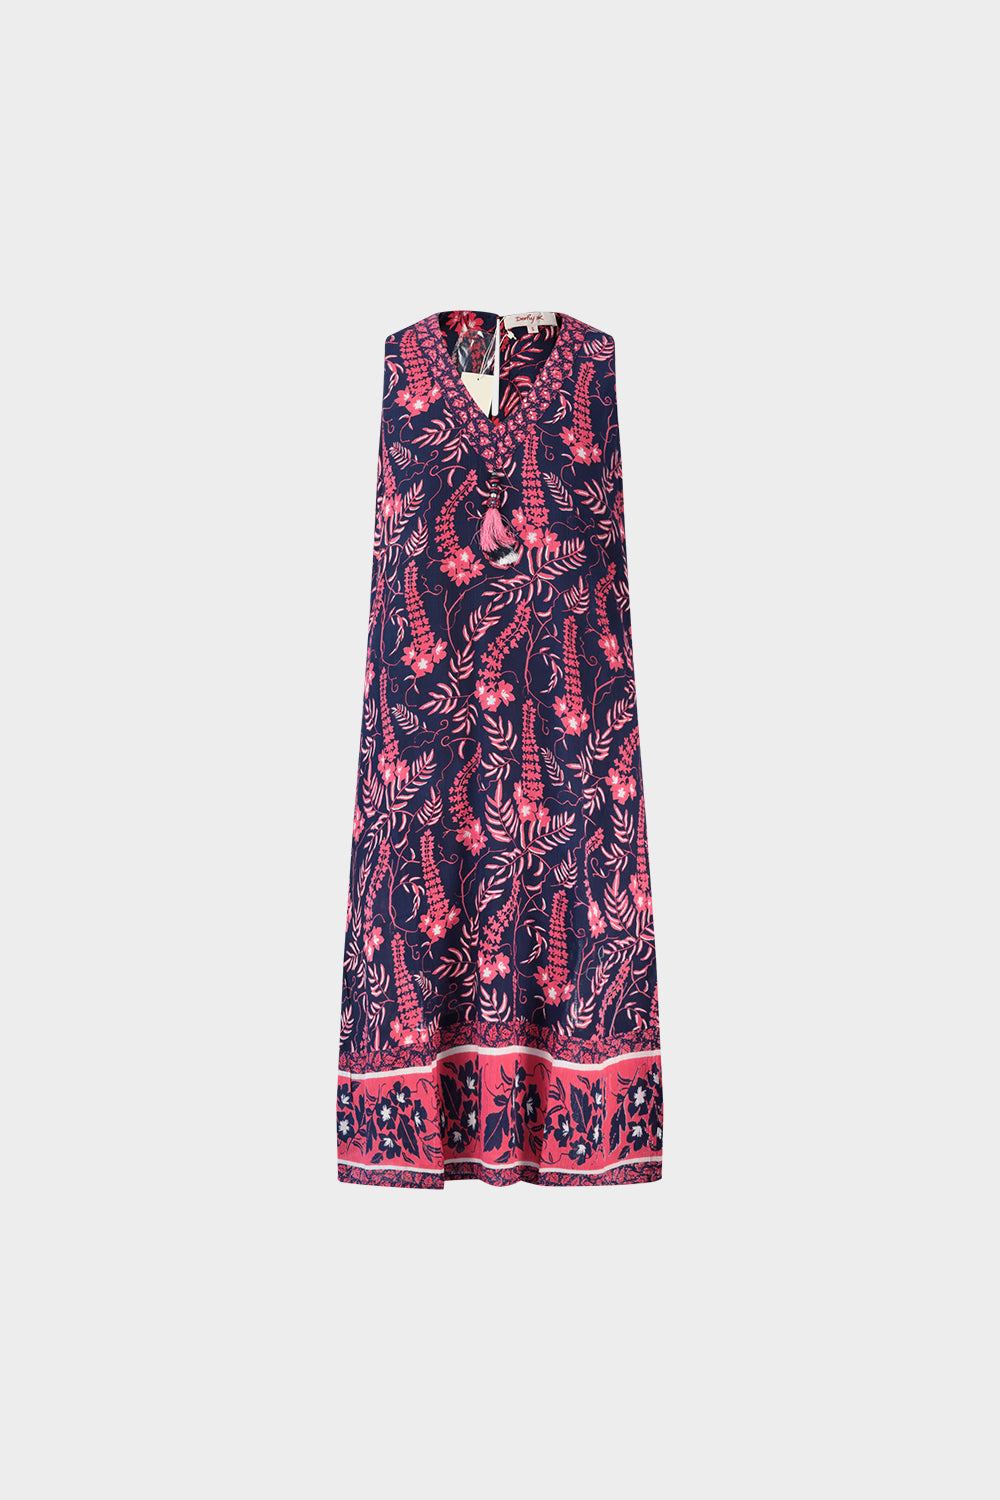 שמלה קצרה לנשים הדפס פרחים RENE DERHY Vendome online | ונדום .